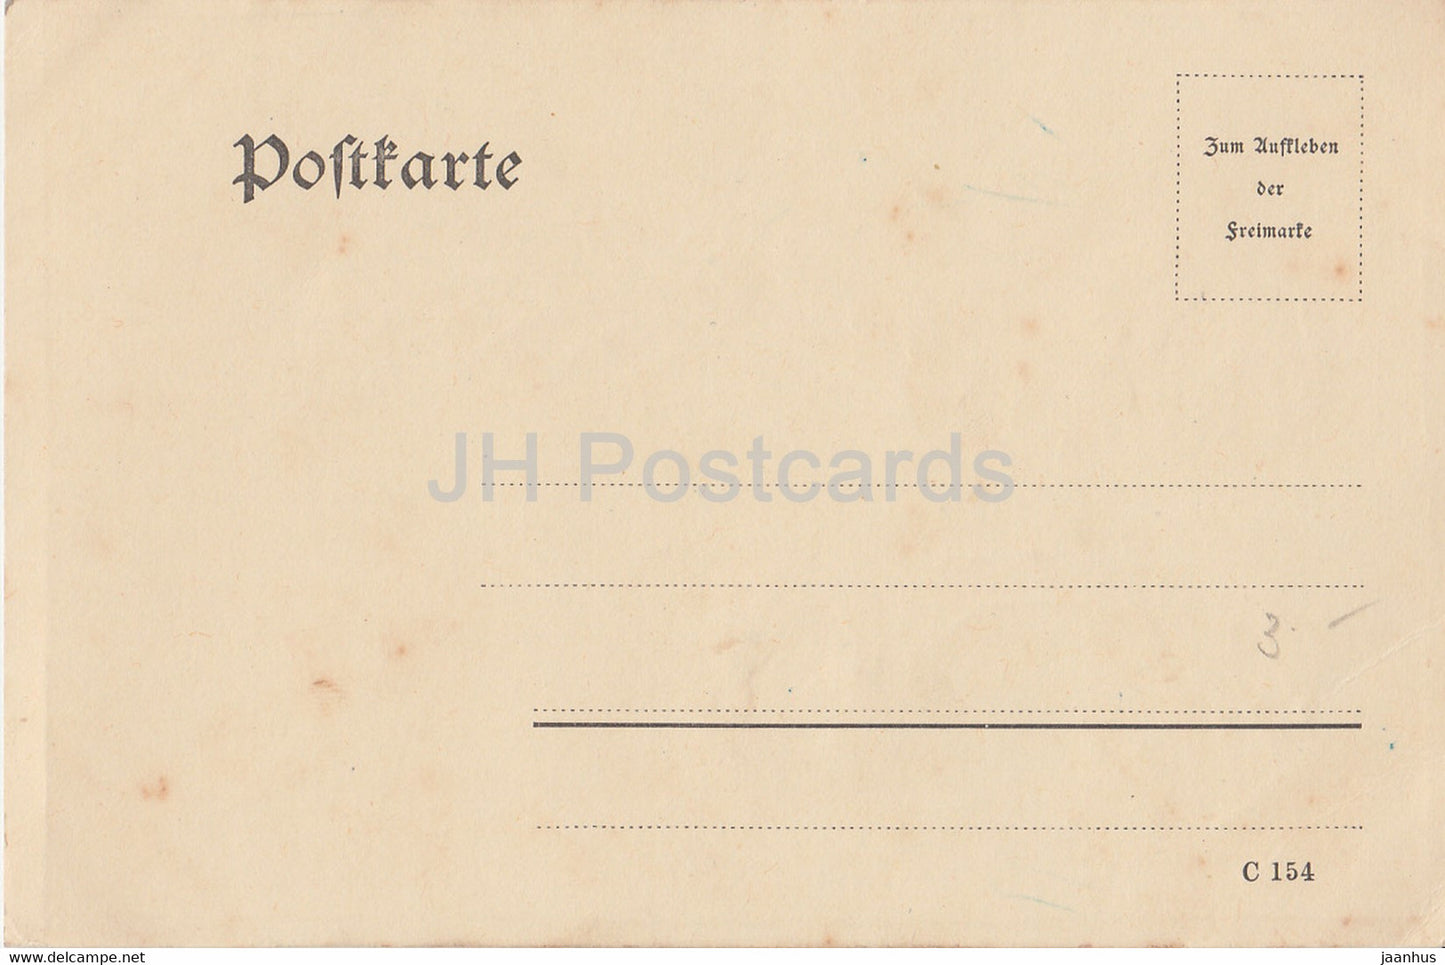 Grußkarte - C 154 - Blumen - alte Postkarte - Deutschland - unbenutzt